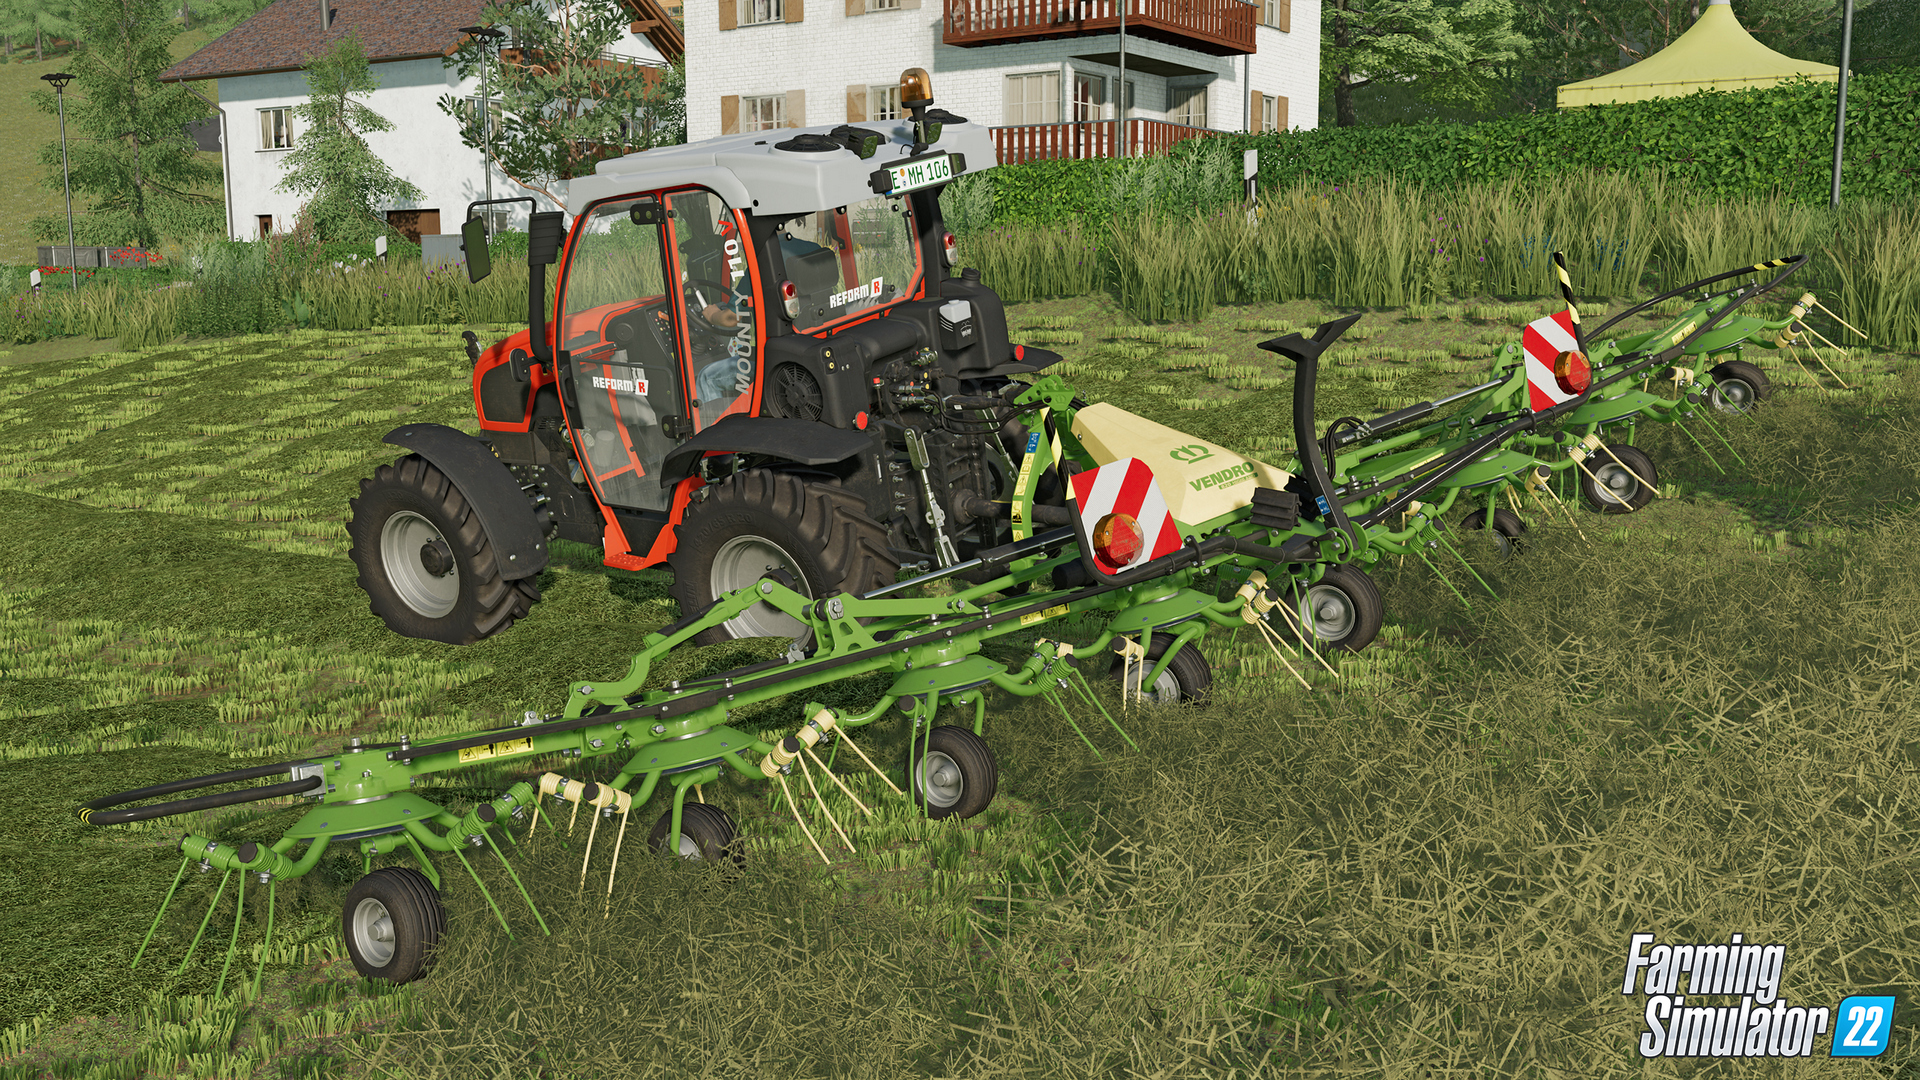 LS 22 Landwirtschaft Simulator für PS4 in Bayern